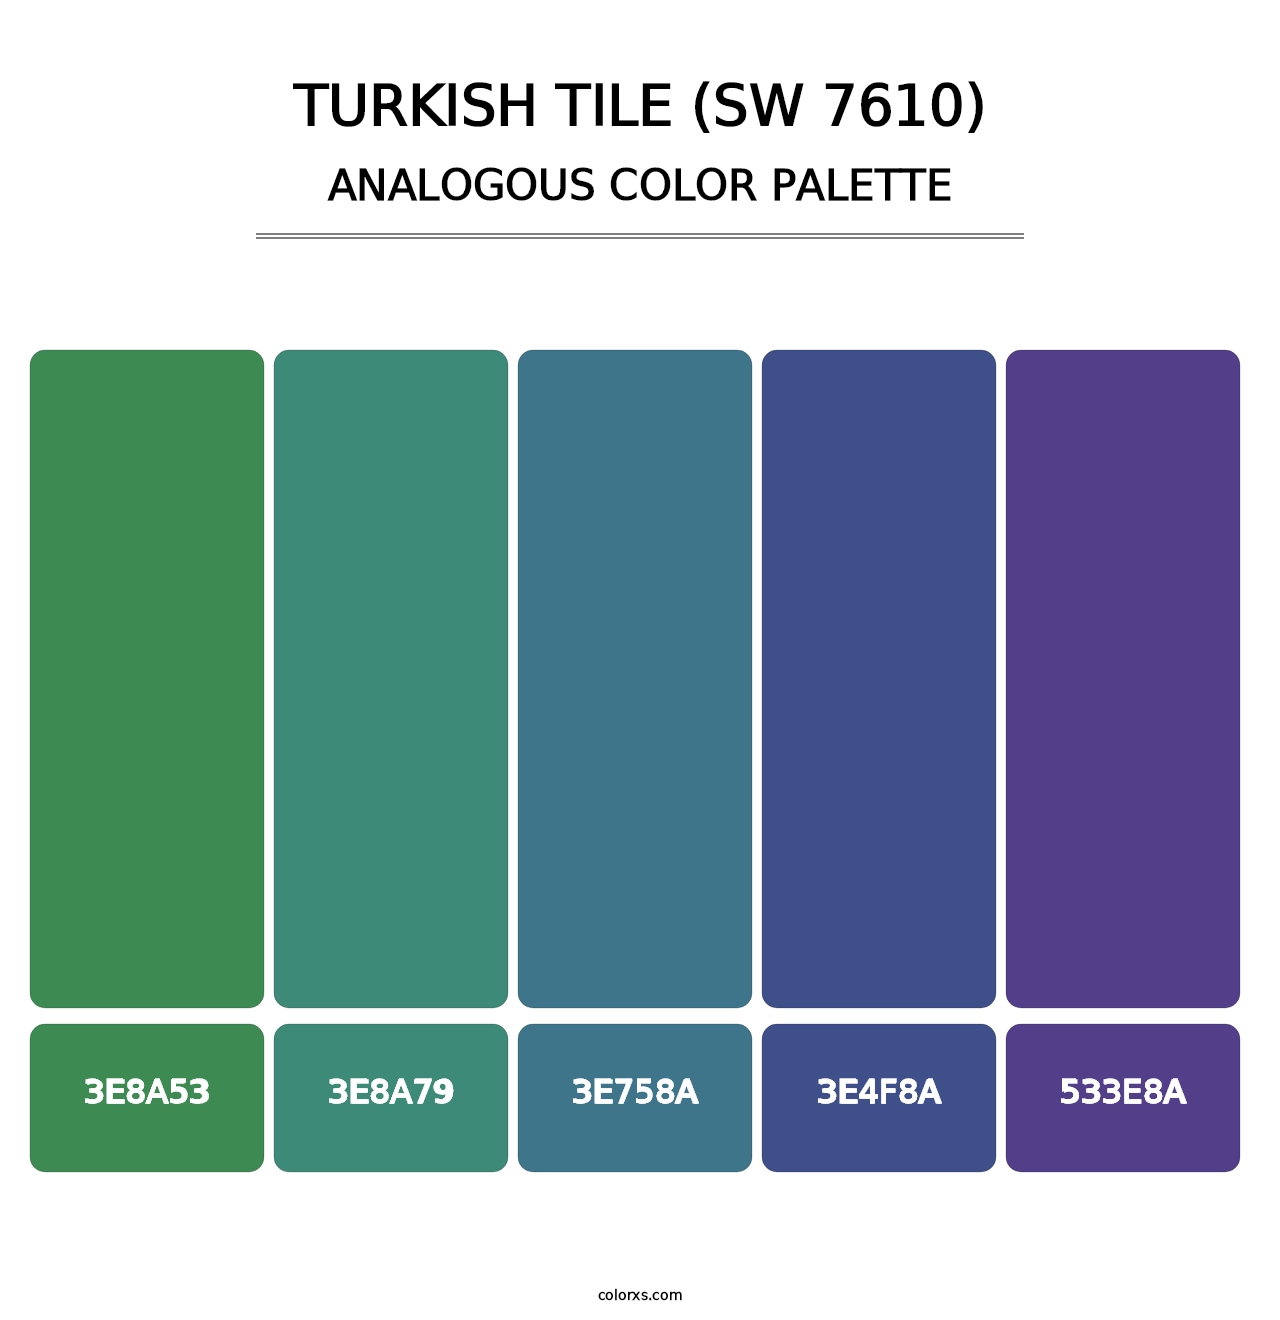 Turkish Tile (SW 7610) - Analogous Color Palette